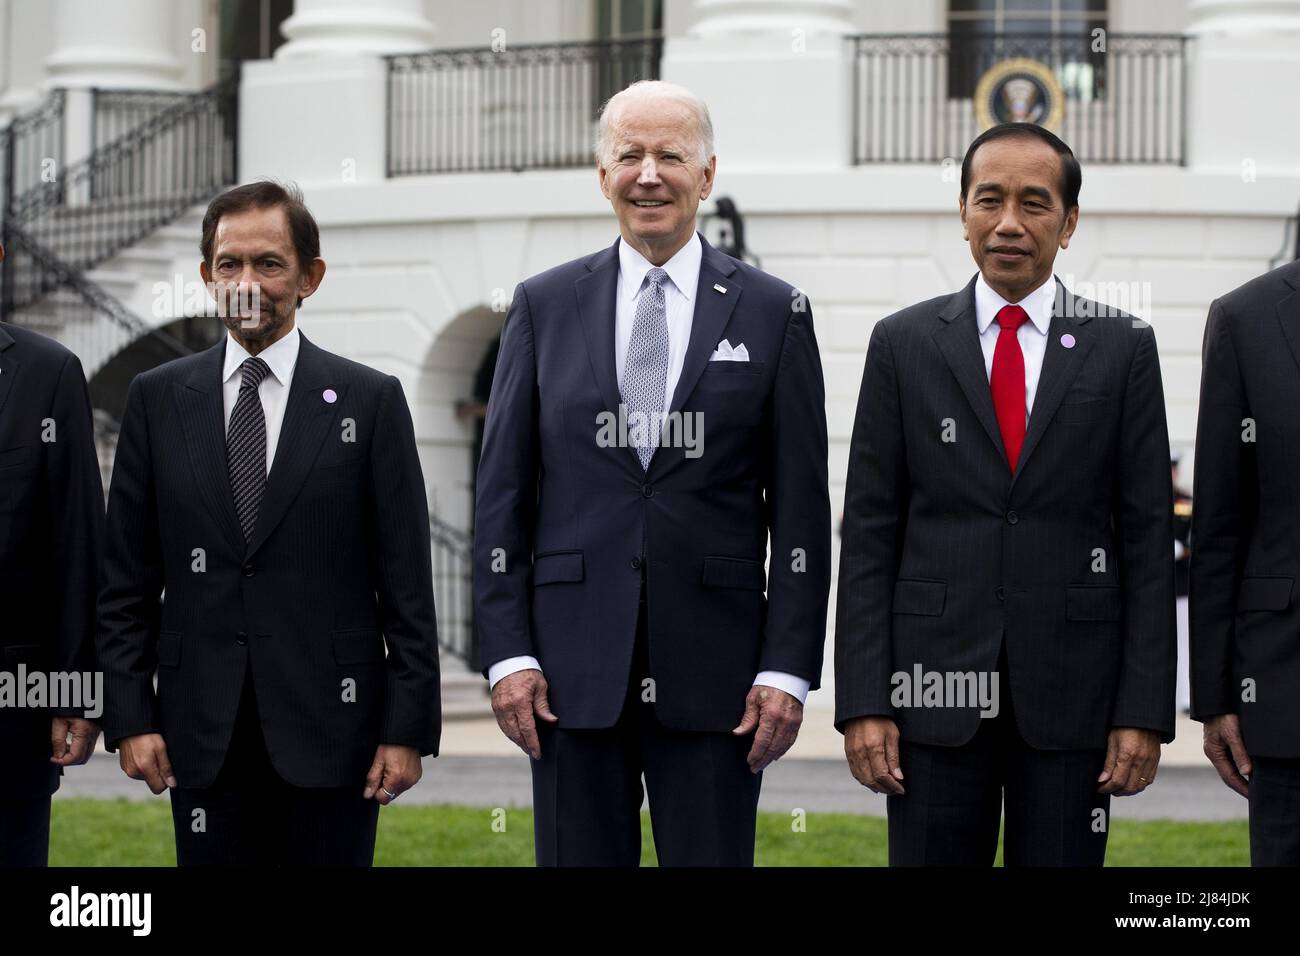 LE président AMÉRICAIN Joe Biden (C) se présente avec le sultan Haji Hassanal Bolkiah (L) de Brunei et le président indonésien Joko Widodo (R) et d'autres dirigeants du Sommet spécial entre les États-Unis et l'ASEAN lors d'une photo de famille sur la pelouse sud de la Maison Blanche à Washington, DC, le jeudi 12 mai, 2022 Biden a souhaité la bienvenue aux dirigeants des pays de l'ANASE et au Secrétaire général de l'ANASE à la Maison Blanche, alors que le Sommet spécial États-Unis-ANASE se réunit, le deuxième Sommet spécial depuis 2016. Le sommet devrait aborder la réponse de la COVID-19 et la sécurité sanitaire mondiale, le changement climatique et le développement durable. Photo de Michael Re Banque D'Images